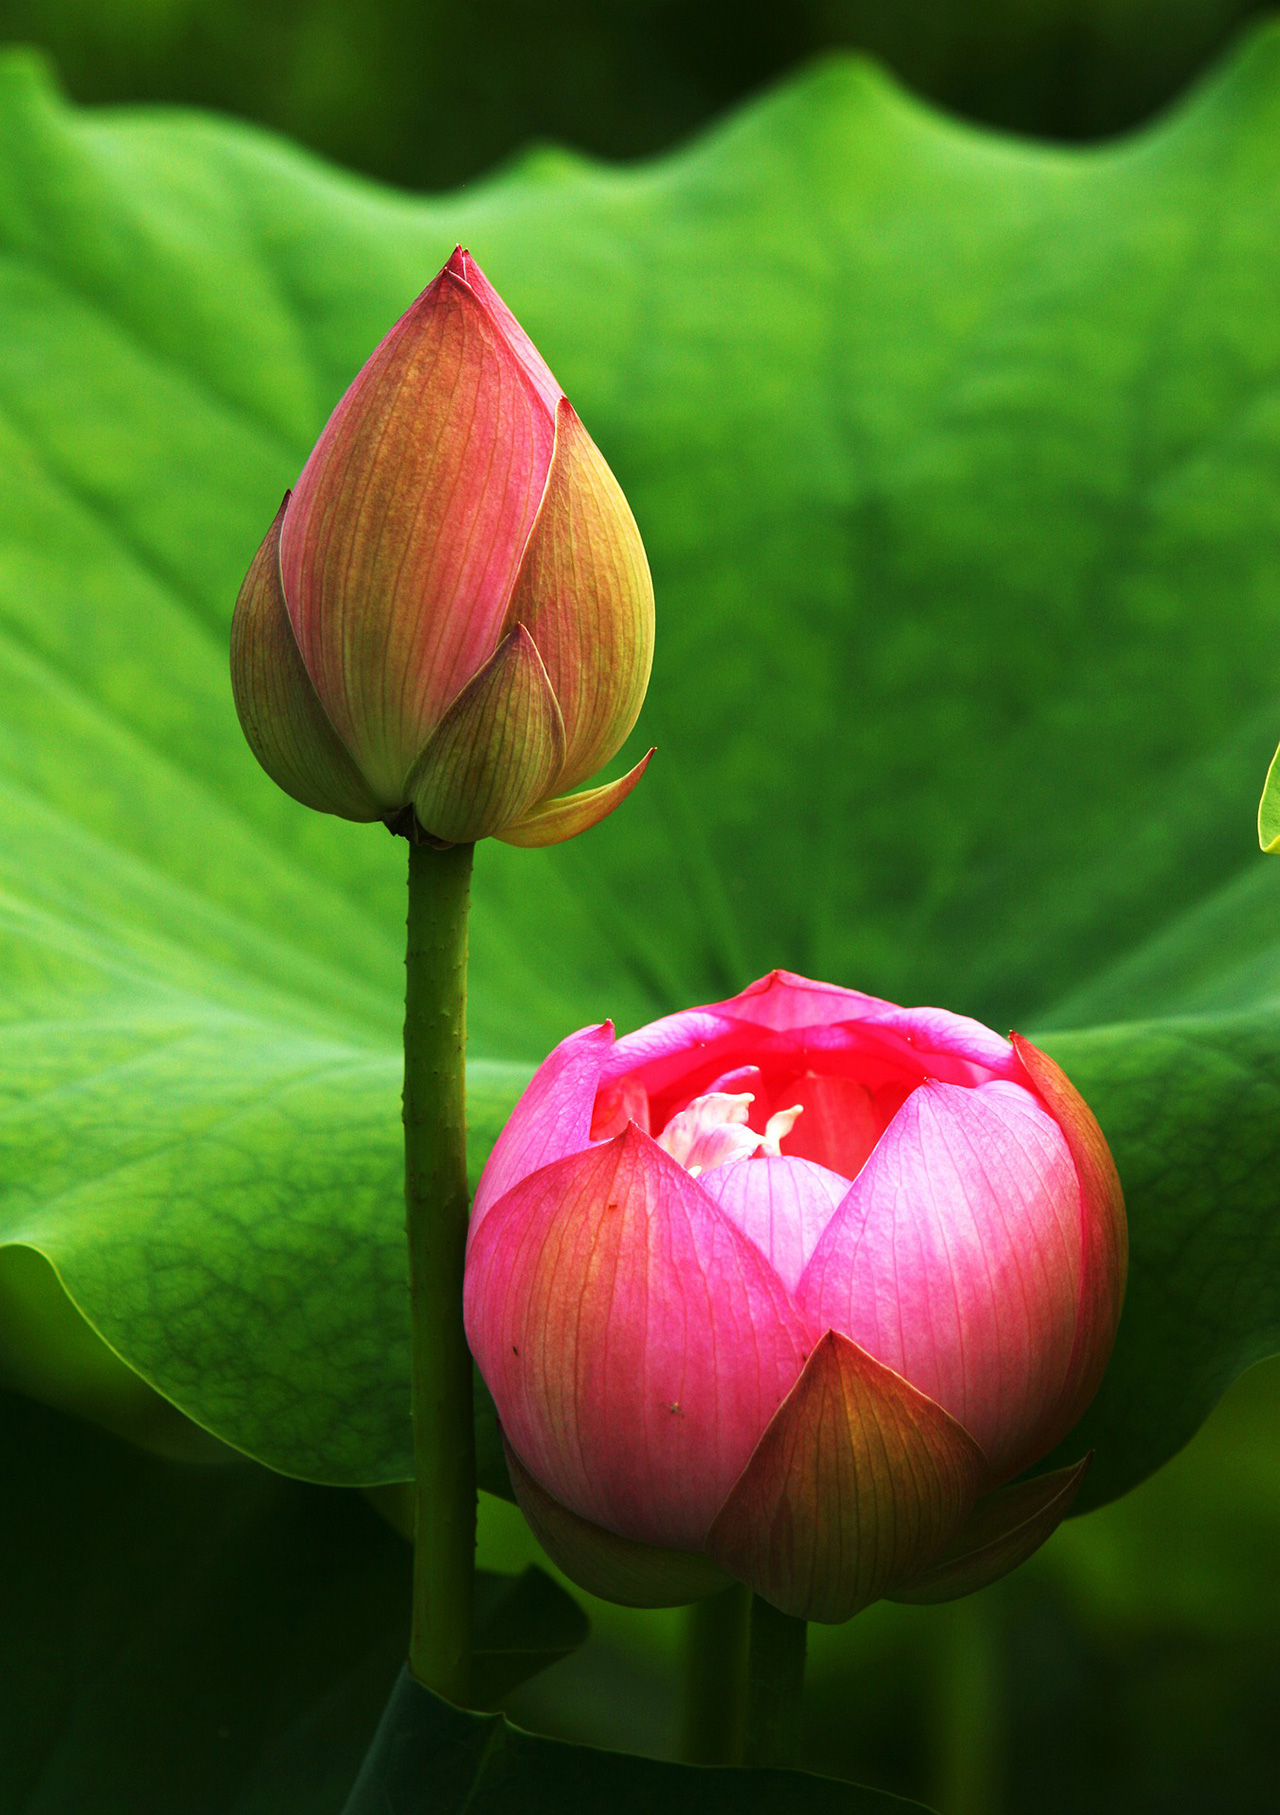 Hoa sen đỏ là biểu tượng của sự may mắn và thịnh vượng trong văn hóa Việt Nam. Họa tiết hoa sen thường xuất hiện trong các nghi lễ tôn giáo và các bức tranh phong cảnh Việt Nam. Những bông hoa sen đẹp rực rỡ màu đỏ là một điều đáng để ngắm nhìn và giúp ta cảm nhận rõ hơn về cái đẹp và ý nghĩa của loài hoa sen.